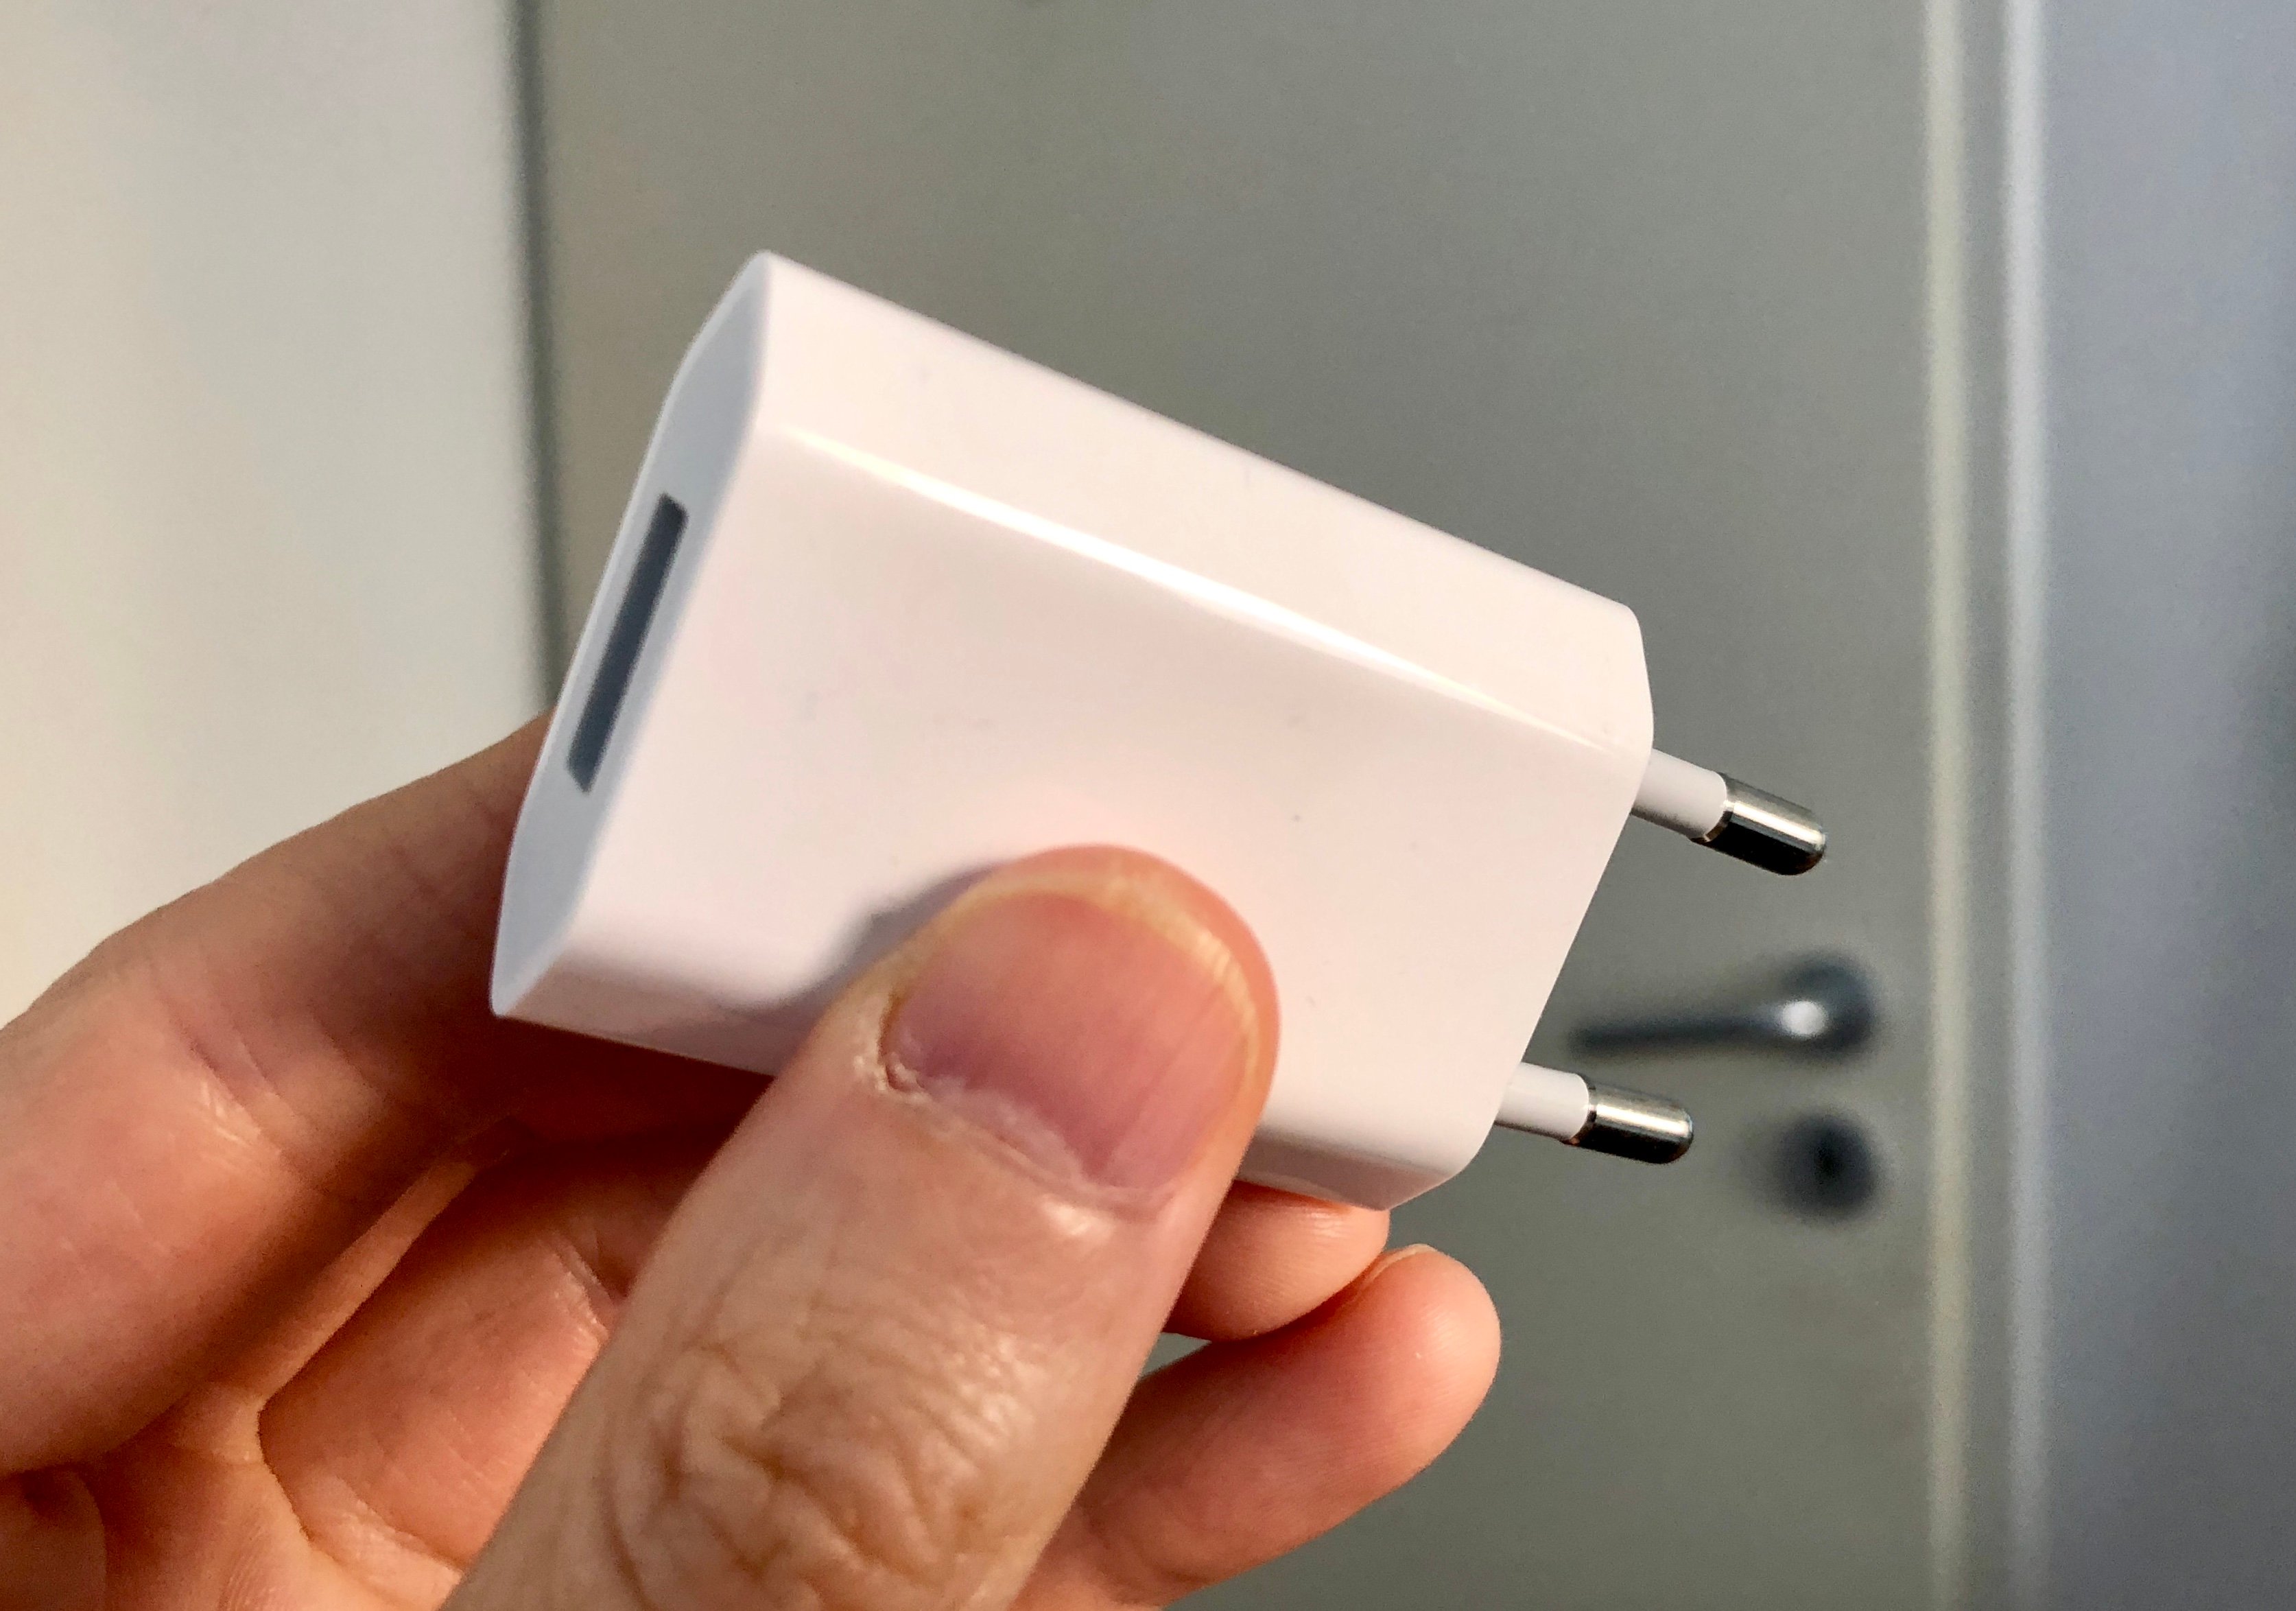 Rumeur contradictoire (mais plausible) : Pas d'USB-C et chargeur classique  5W conservé pour les iPhone 2019